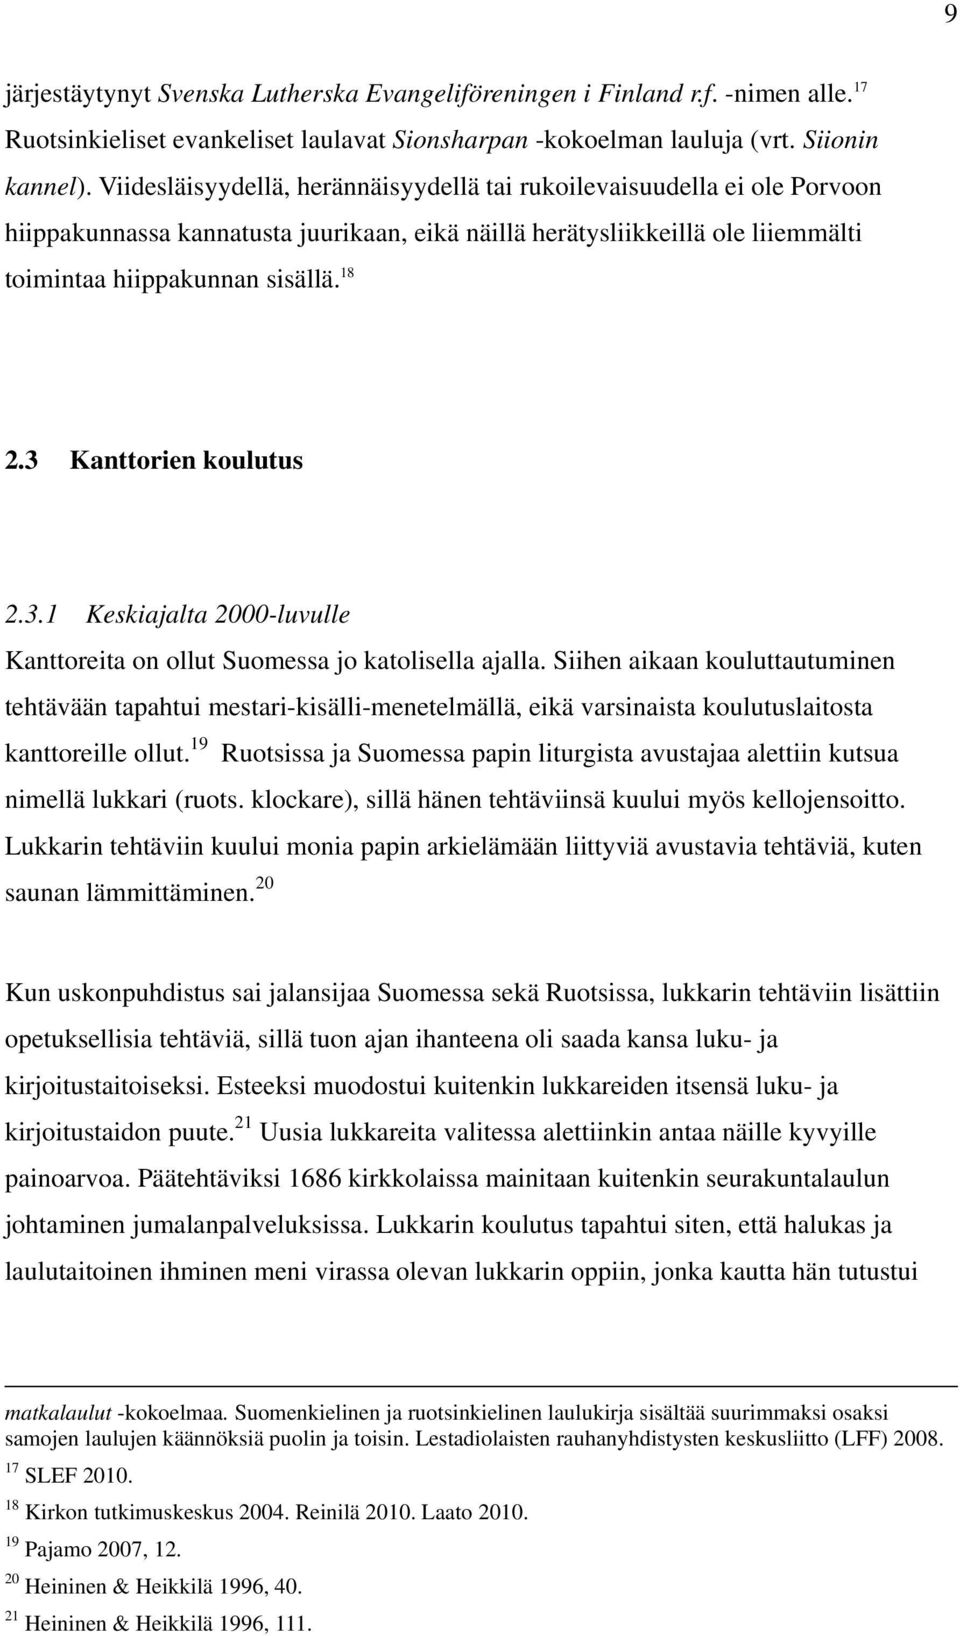 3 Kanttorien koulutus 2.3.1 Keskiajalta 2000-luvulle Kanttoreita on ollut Suomessa jo katolisella ajalla.